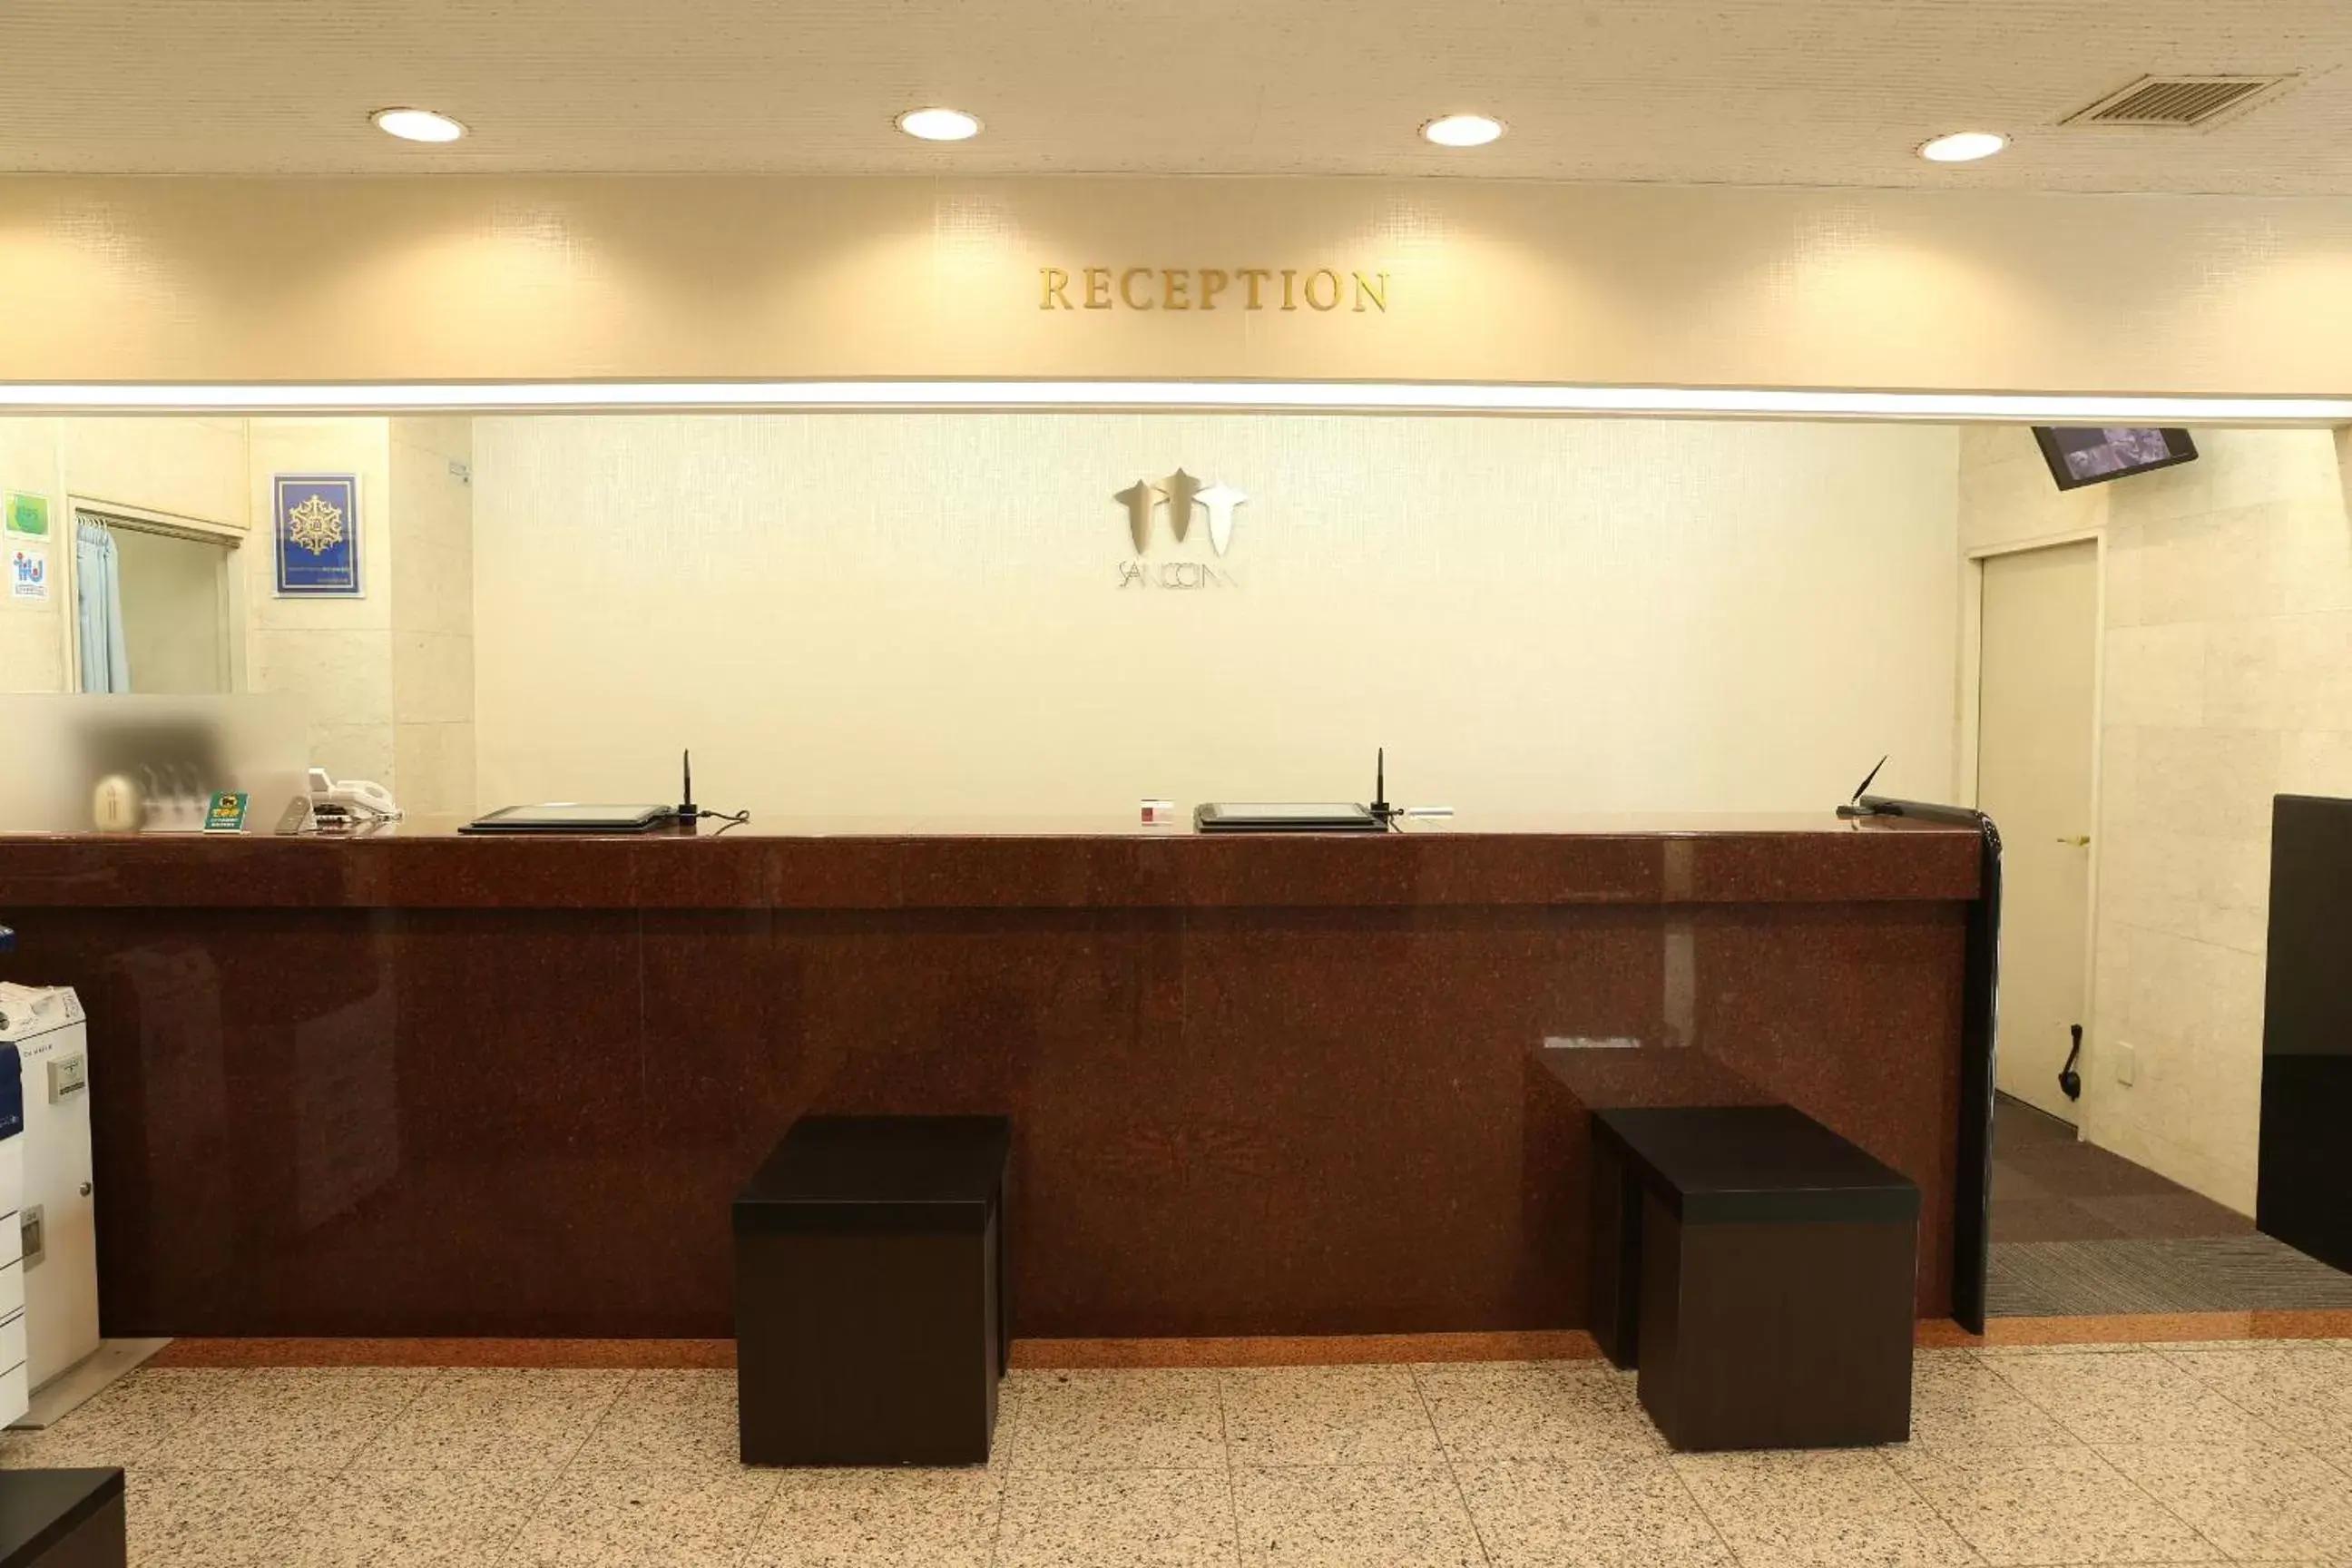 Lobby or reception, Lobby/Reception in Sanco Inn Toyota